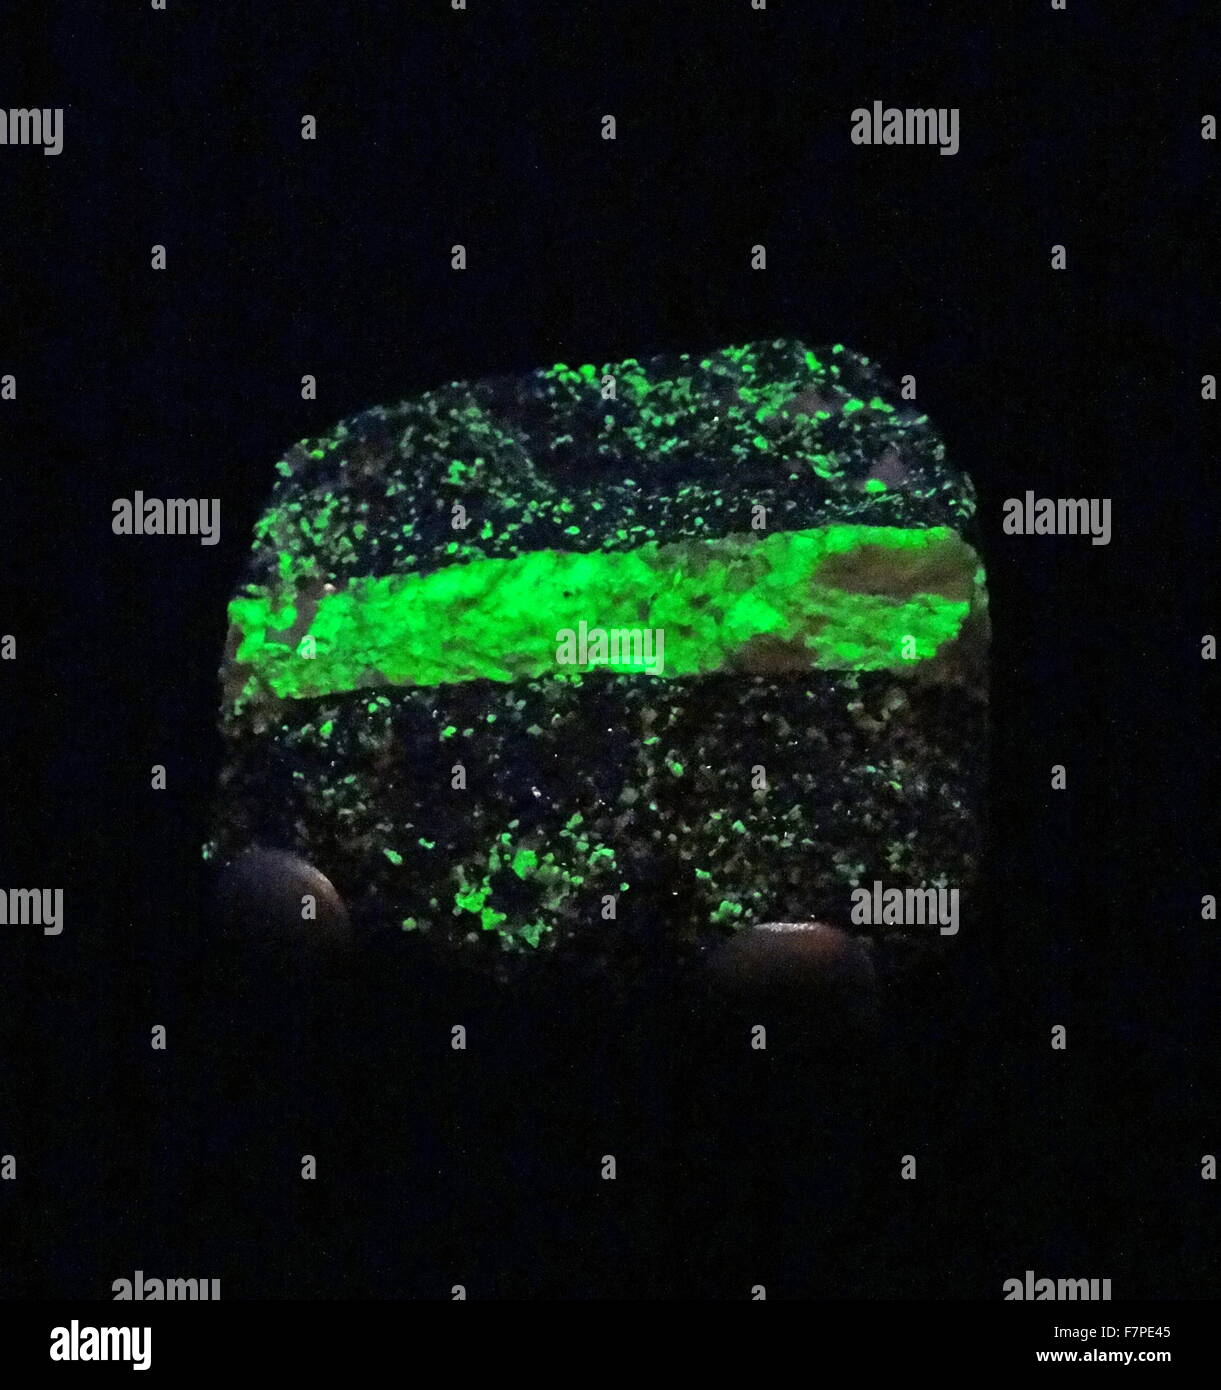 Minerali fluorescenti emettono luce visibile quando esposti a luce ultravioletta Foto Stock